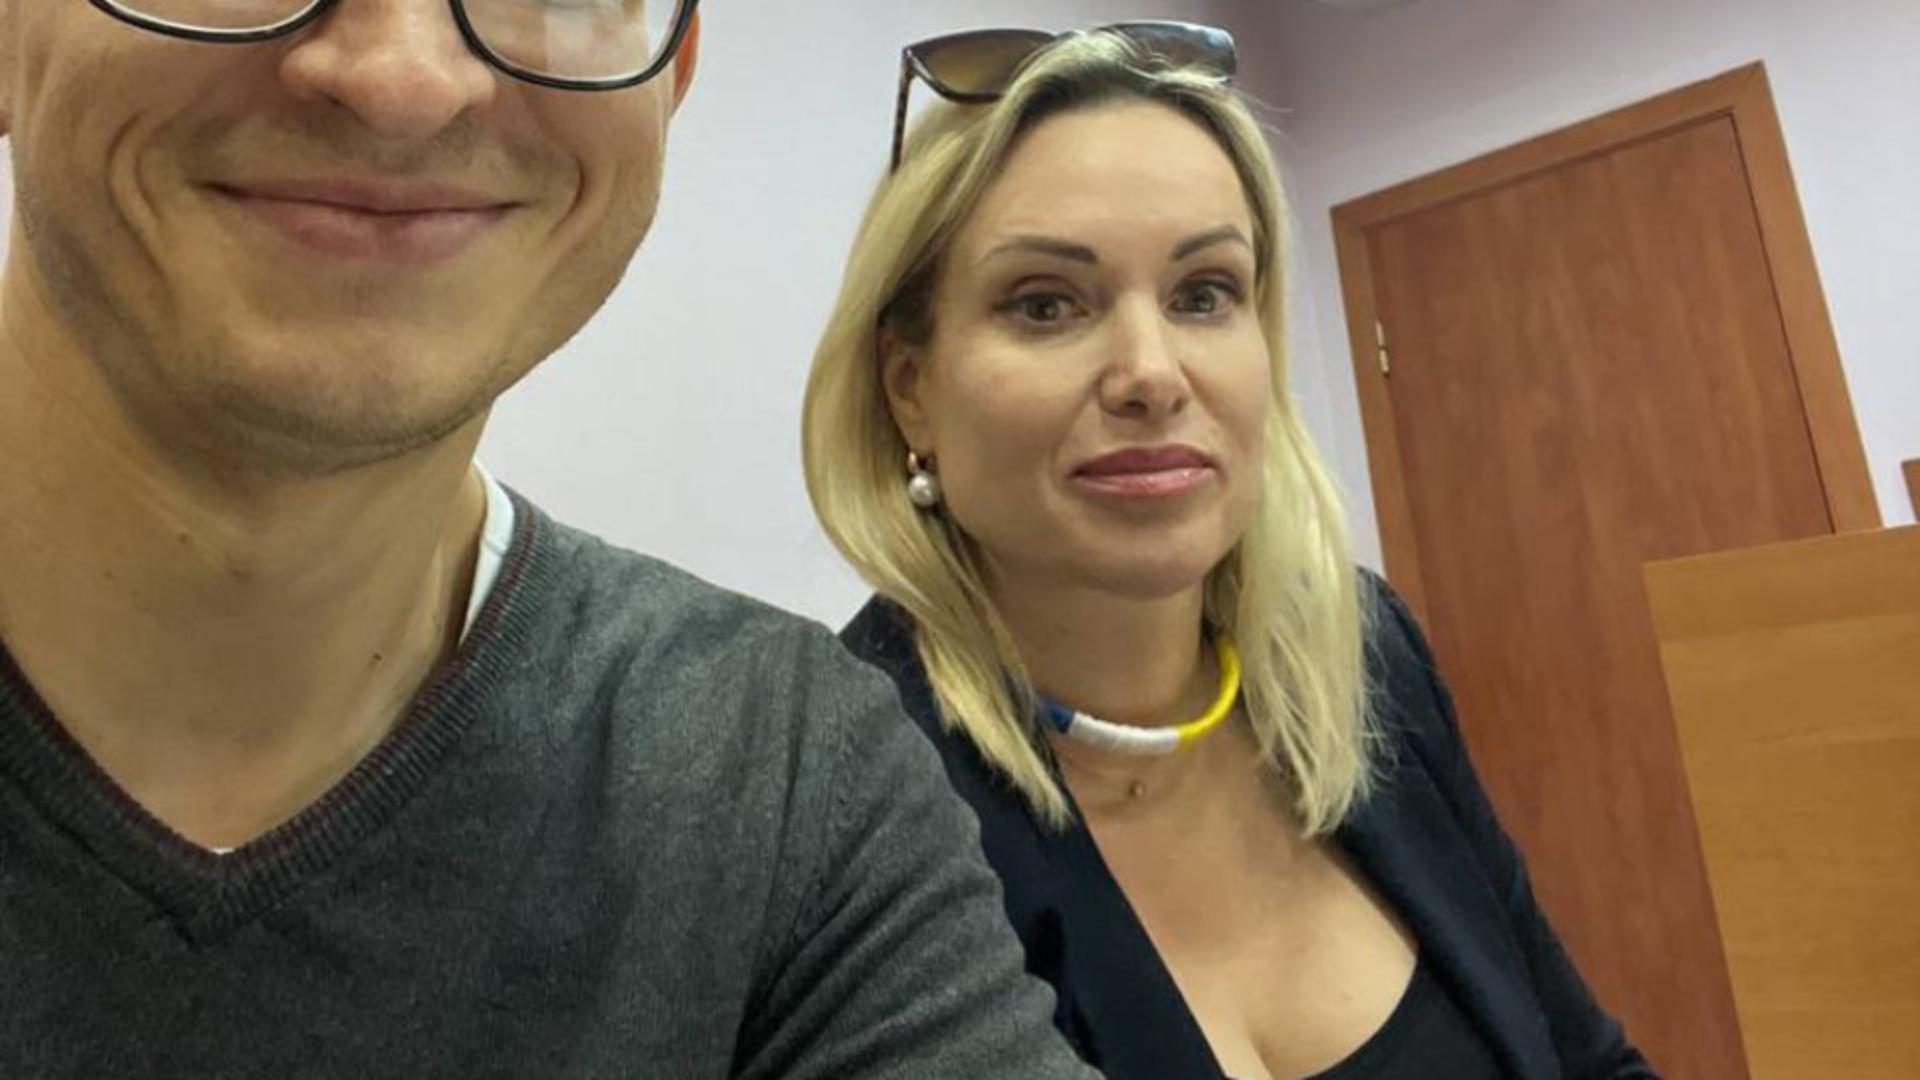 Jurnalista Marina Ovsiannikova și avocatul ei - imagine de arhivă 